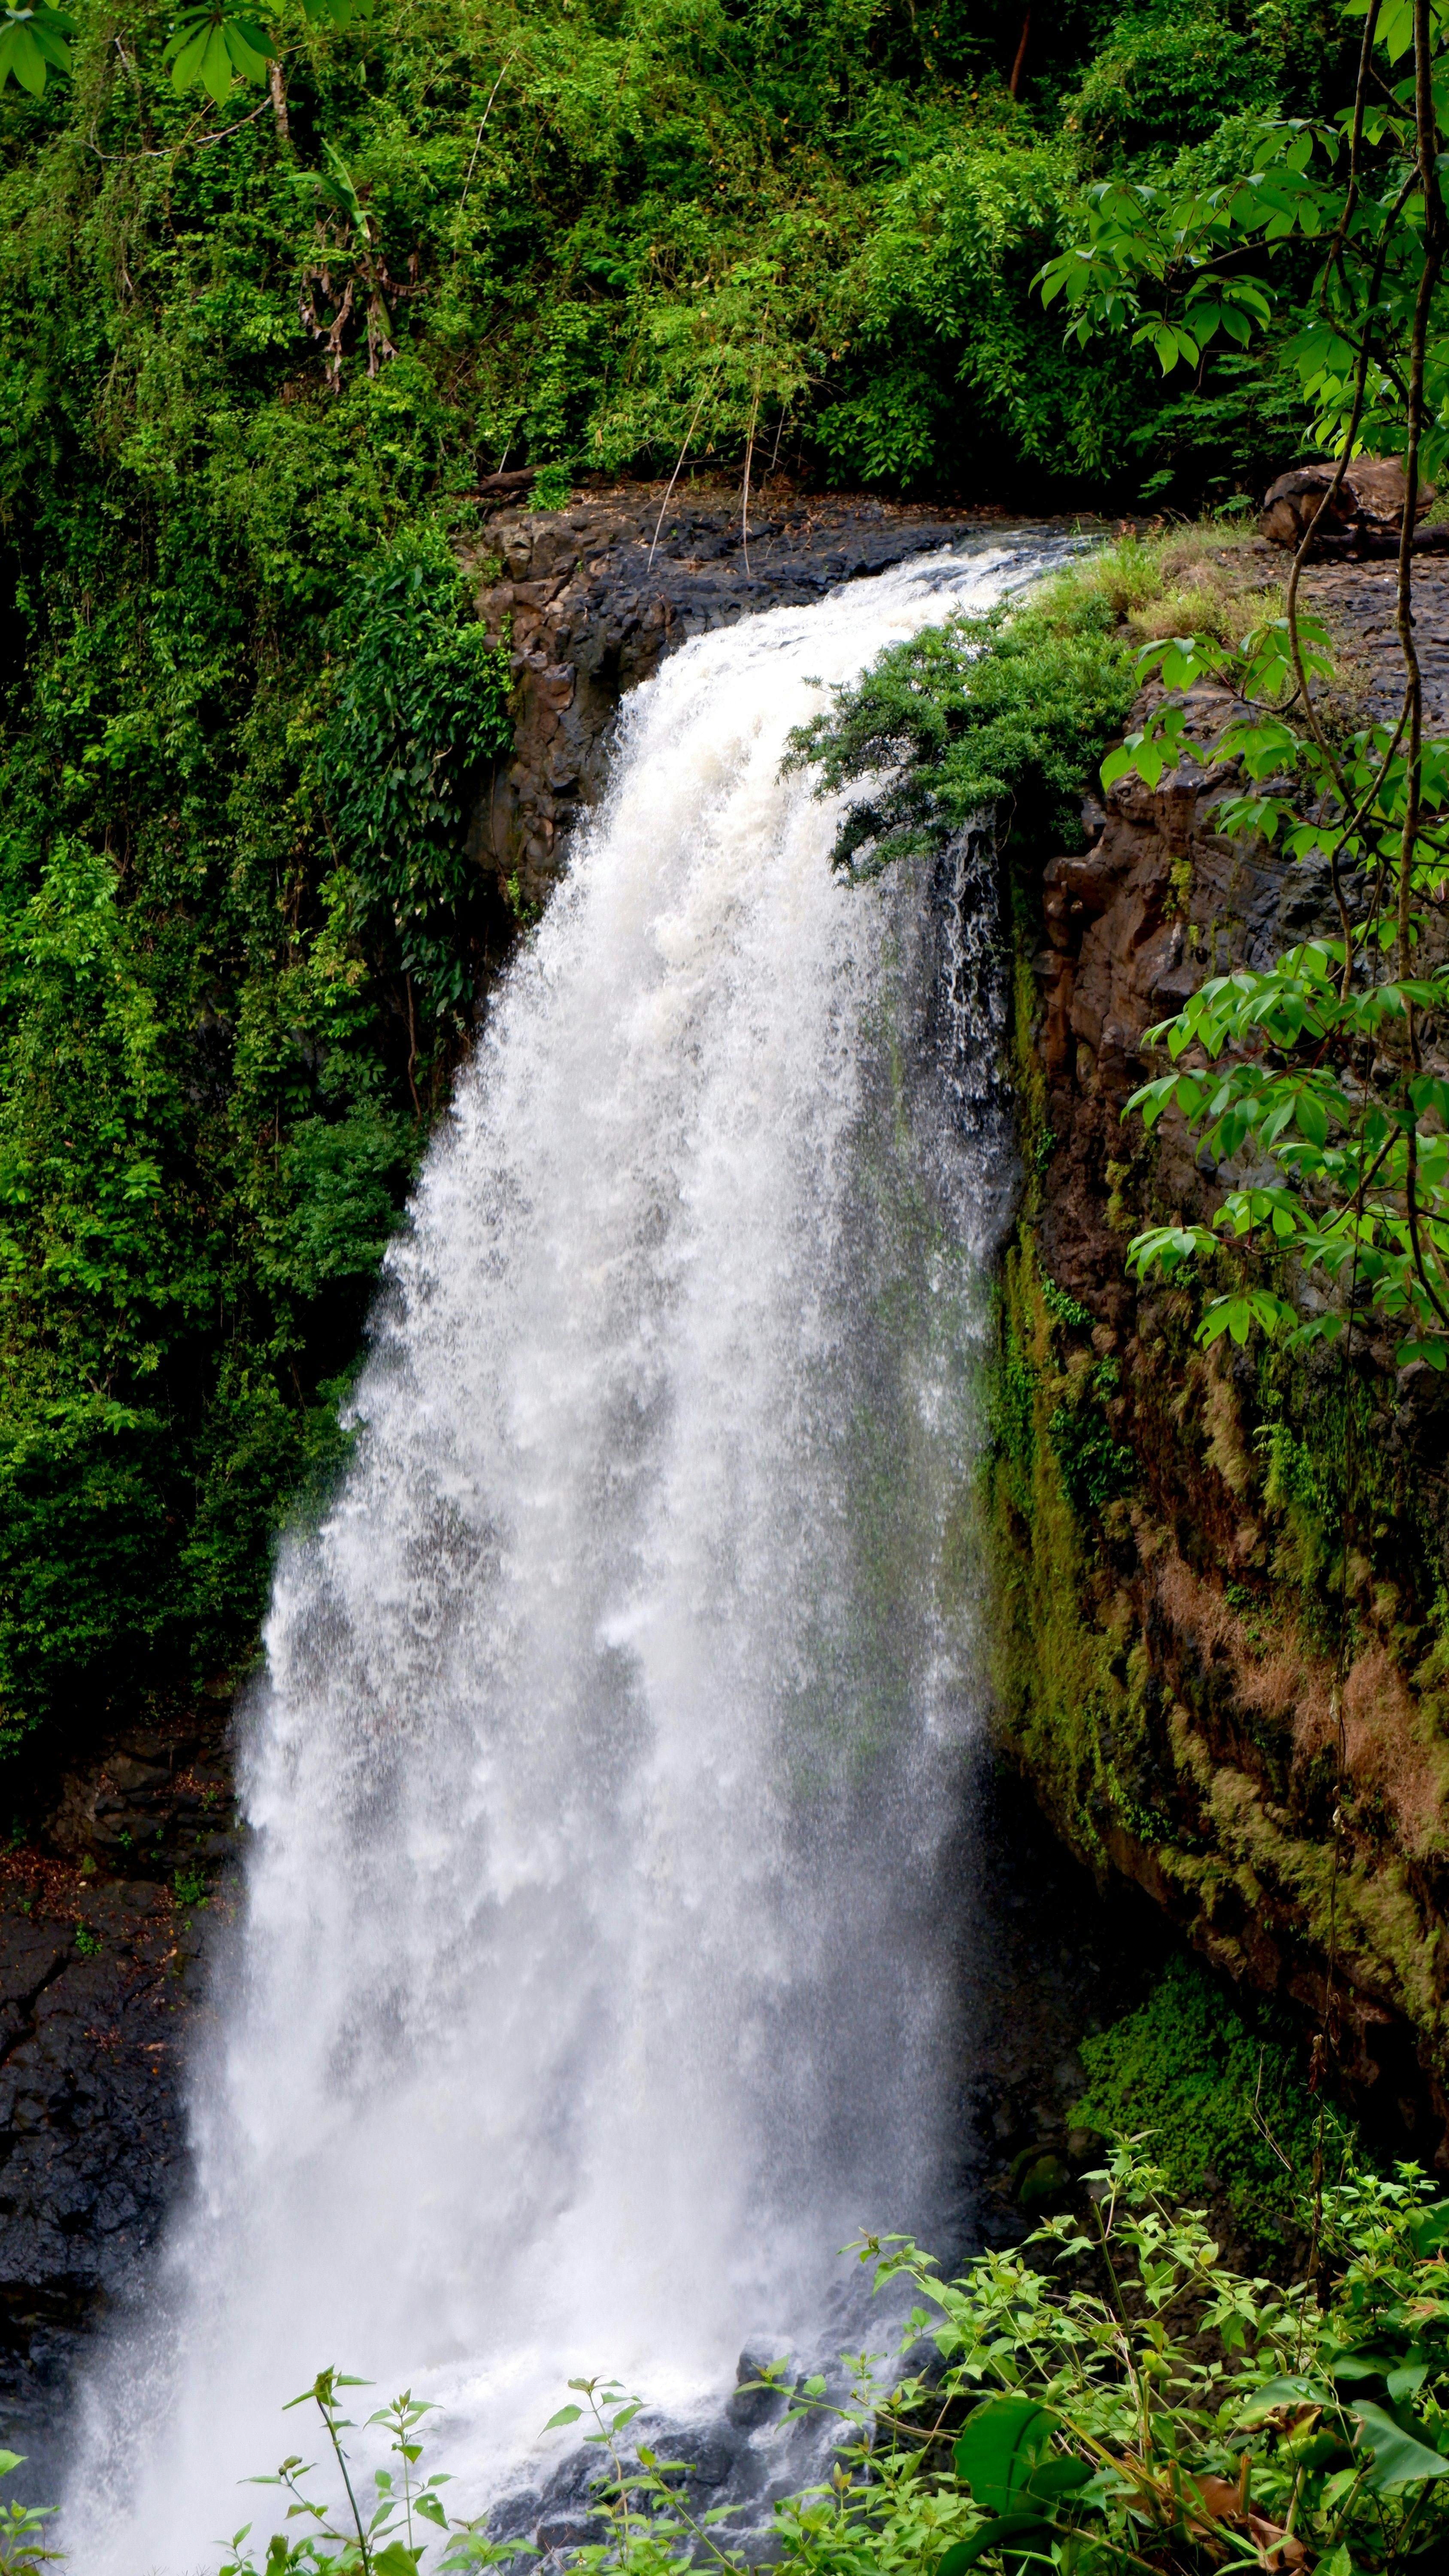 Bousra waterfall in Mondulkiri, Cambodia.